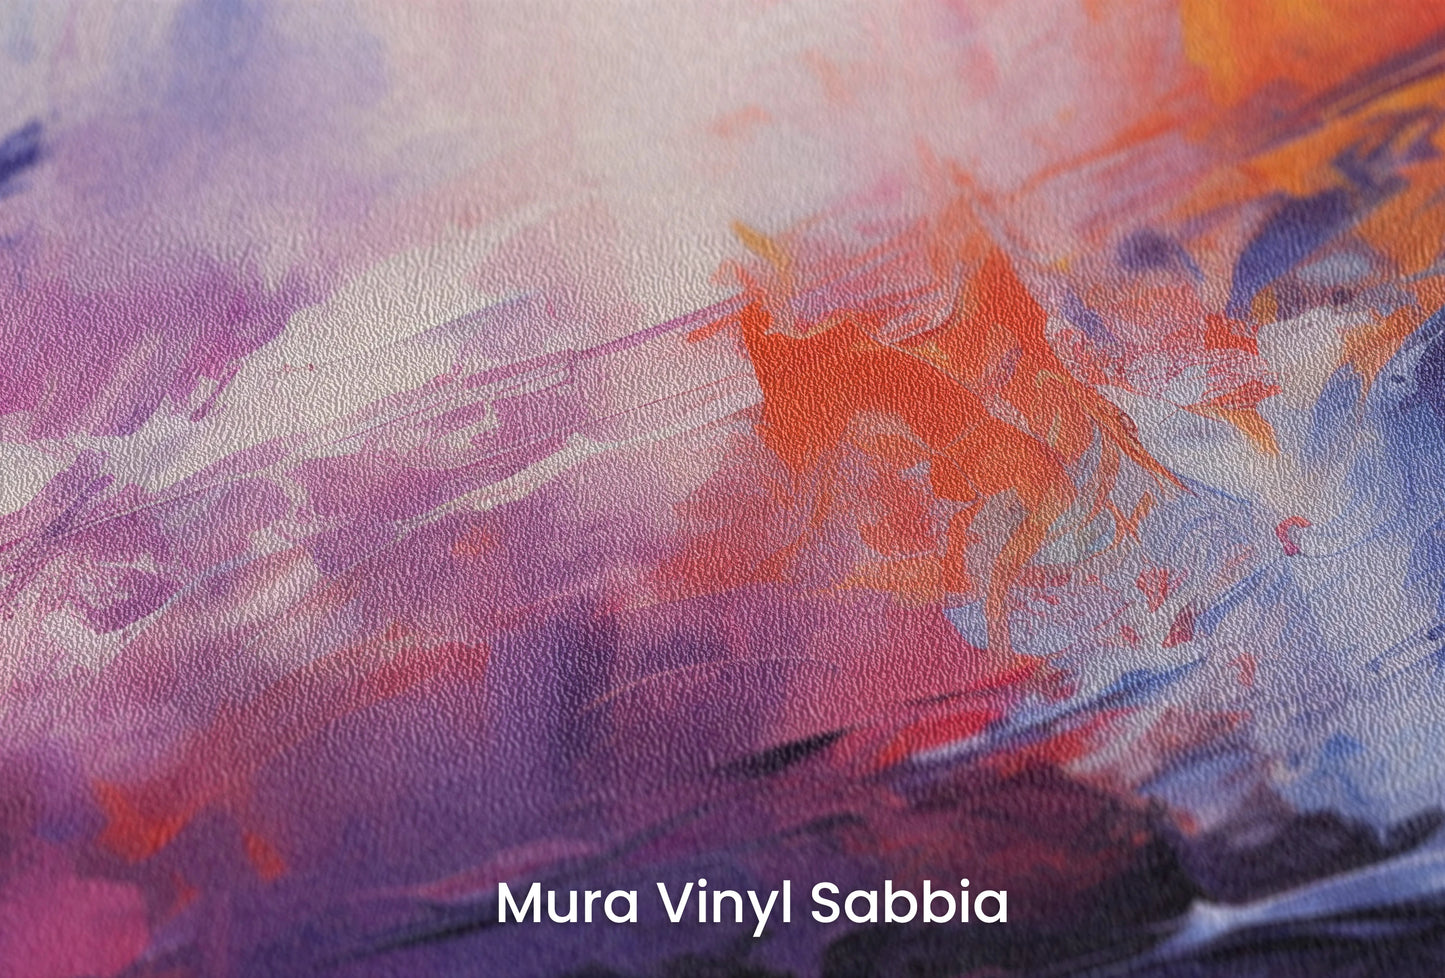 Zbliżenie na artystyczną fototapetę o nazwie Vivid Dreamscape na podłożu Mura Vinyl Sabbia struktura grubego ziarna piasku.